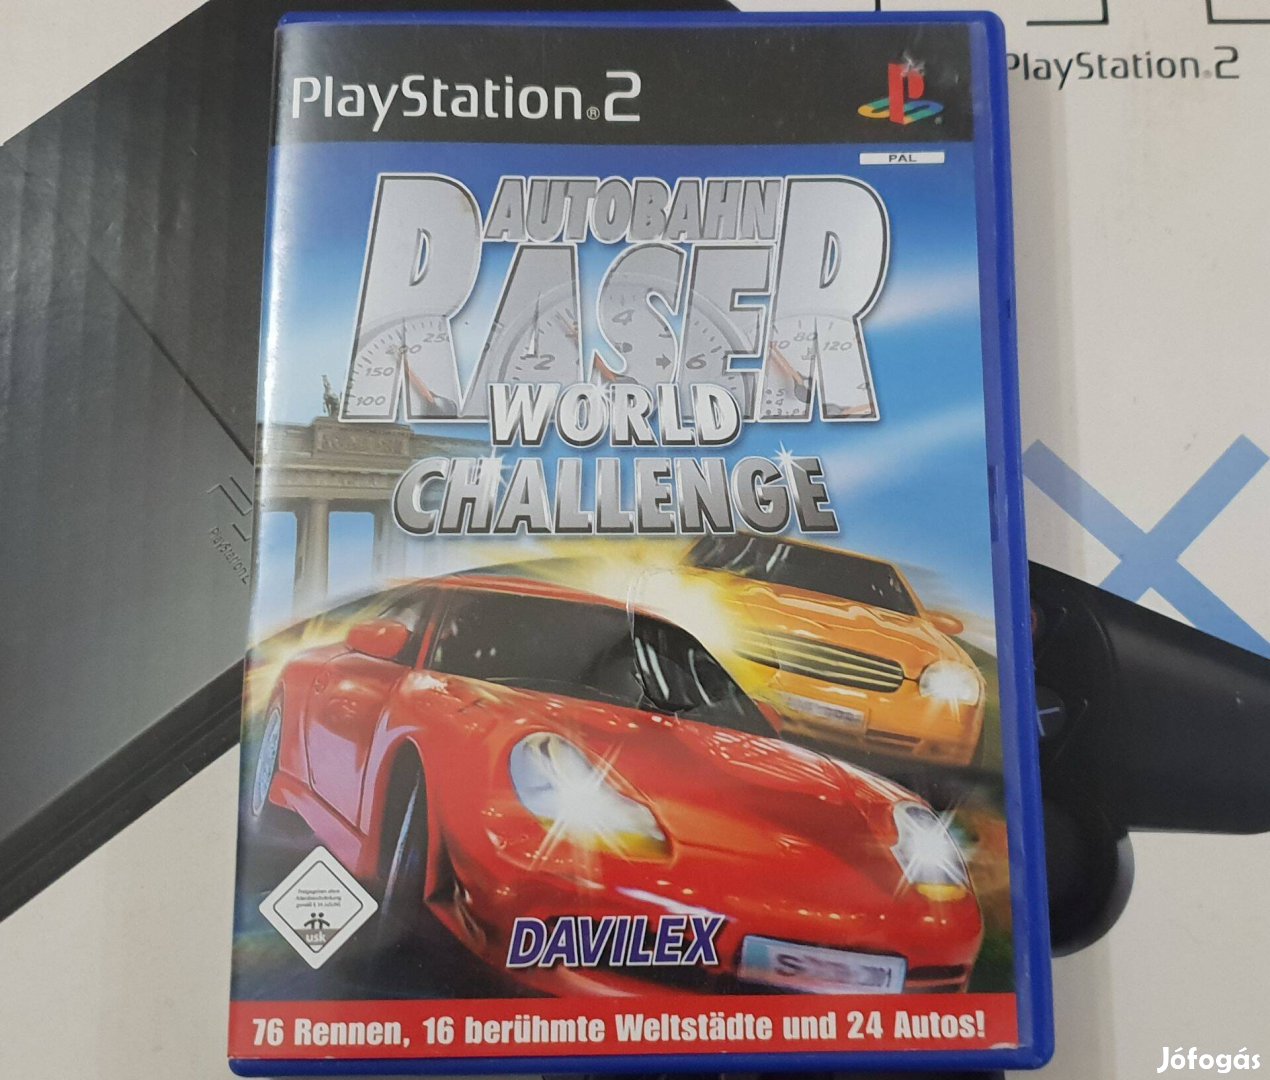 Autobahn Racer World Chellenge Playstation 2 eredeti lemez eladó